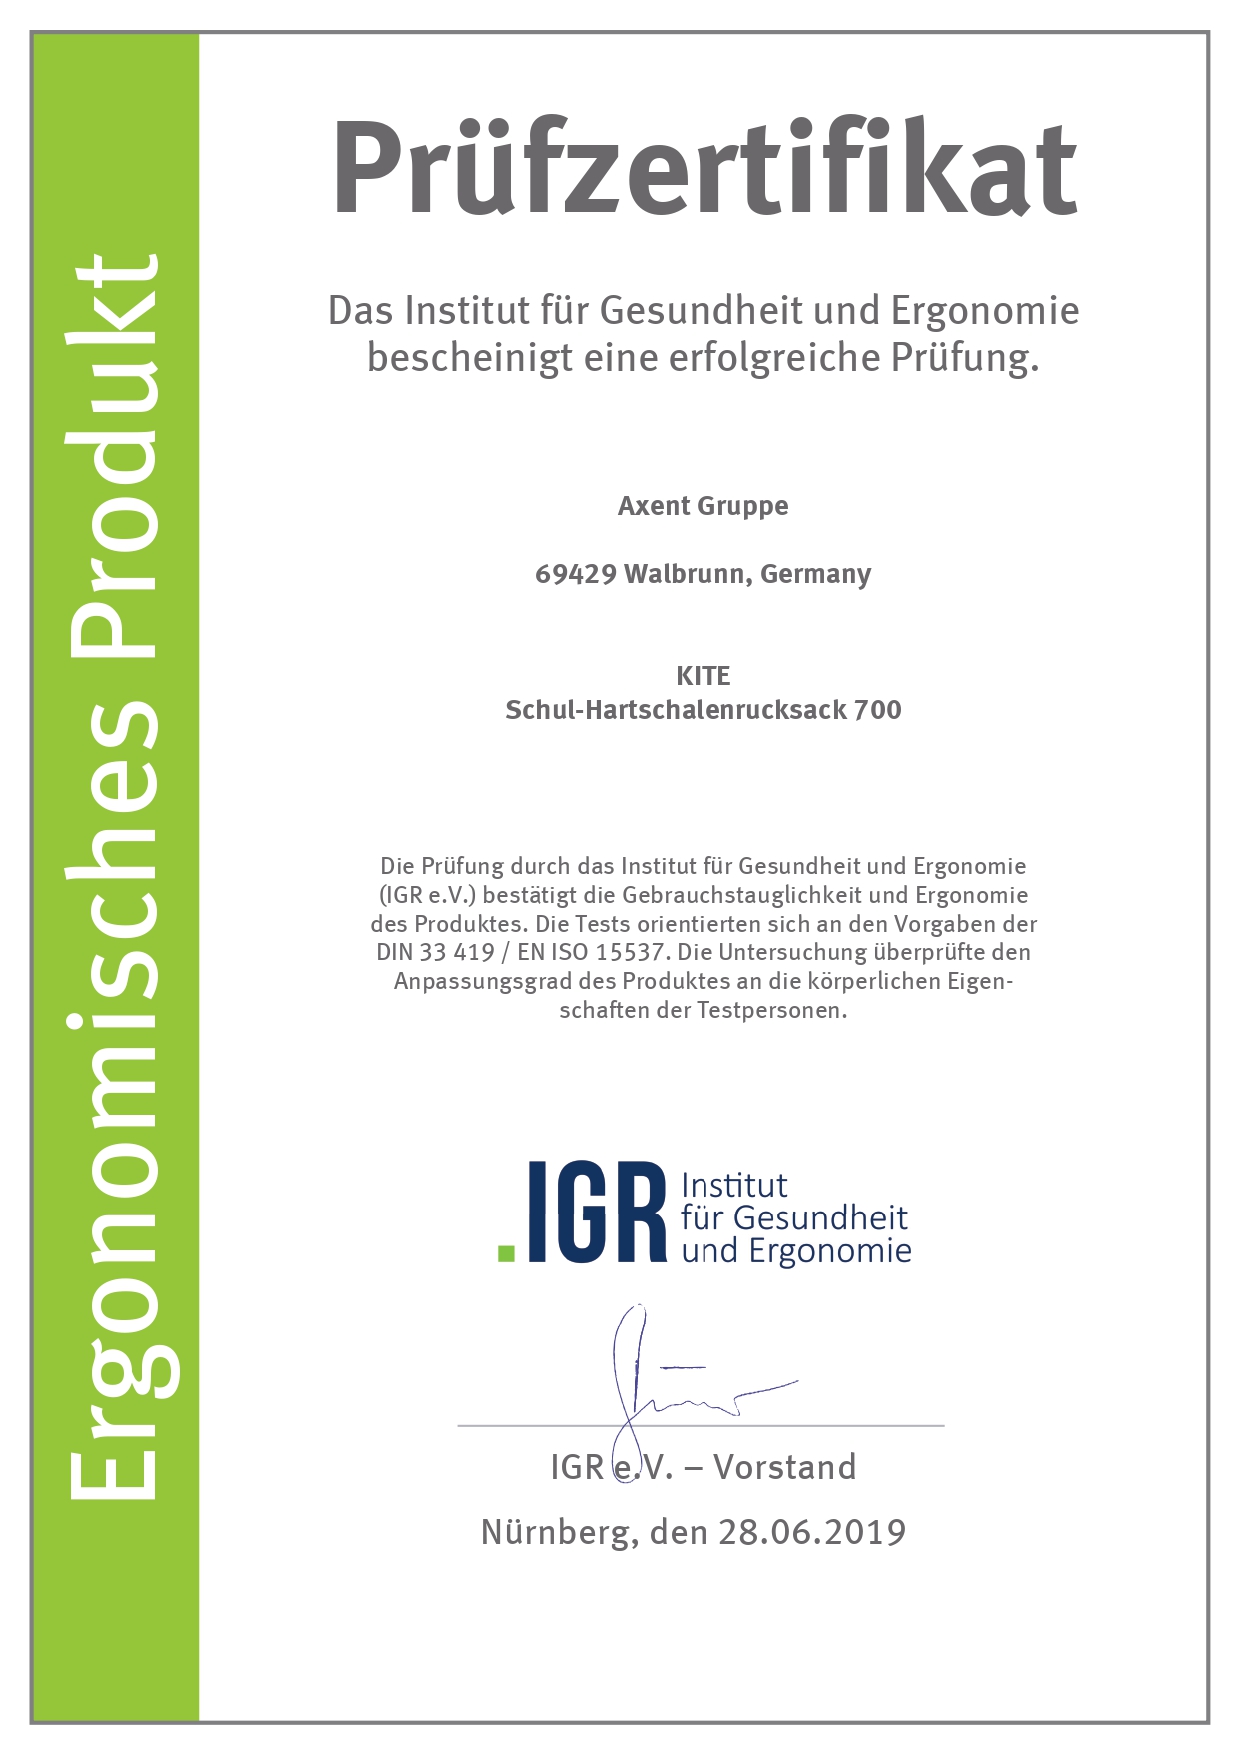 Сертифікат Німецького інституту здоров'я і ергономіки IGR - модель 700